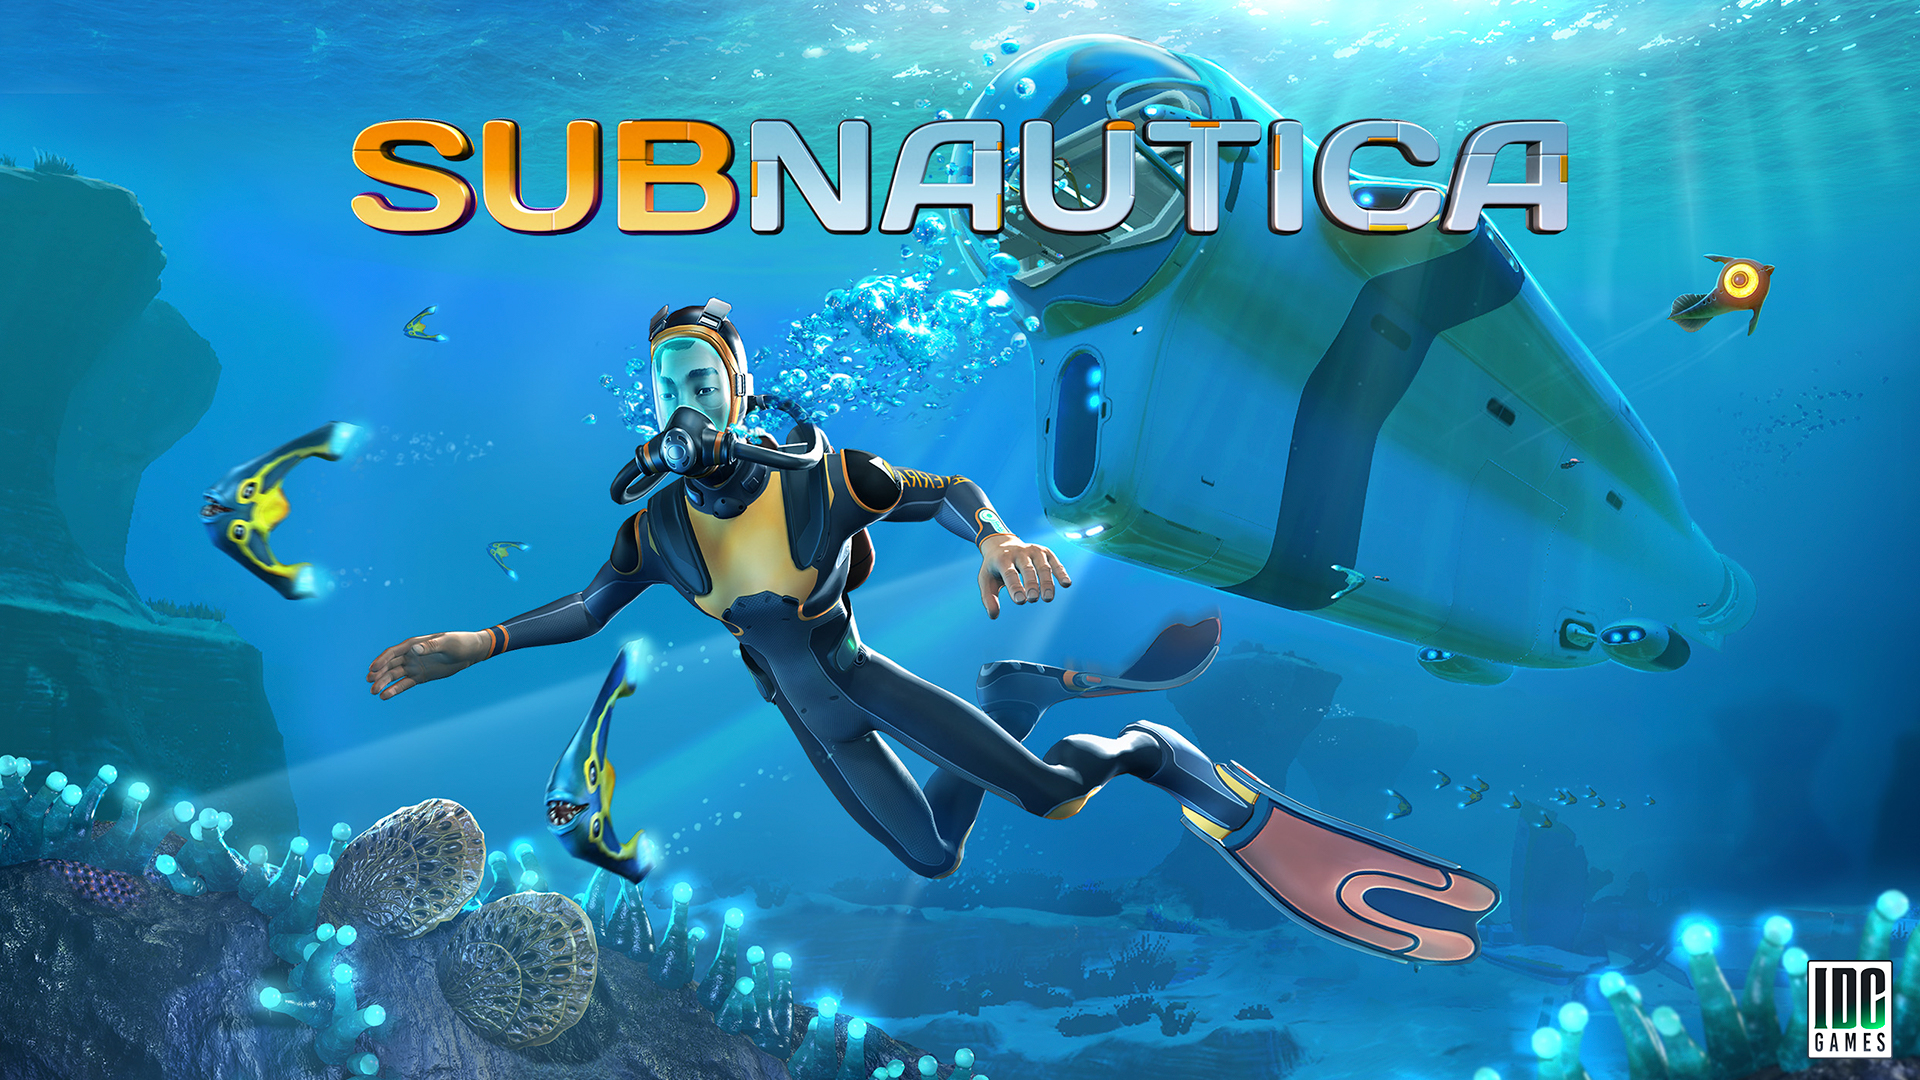 Esplorando le profondità: Analisi tecnica del gioco Subnautica